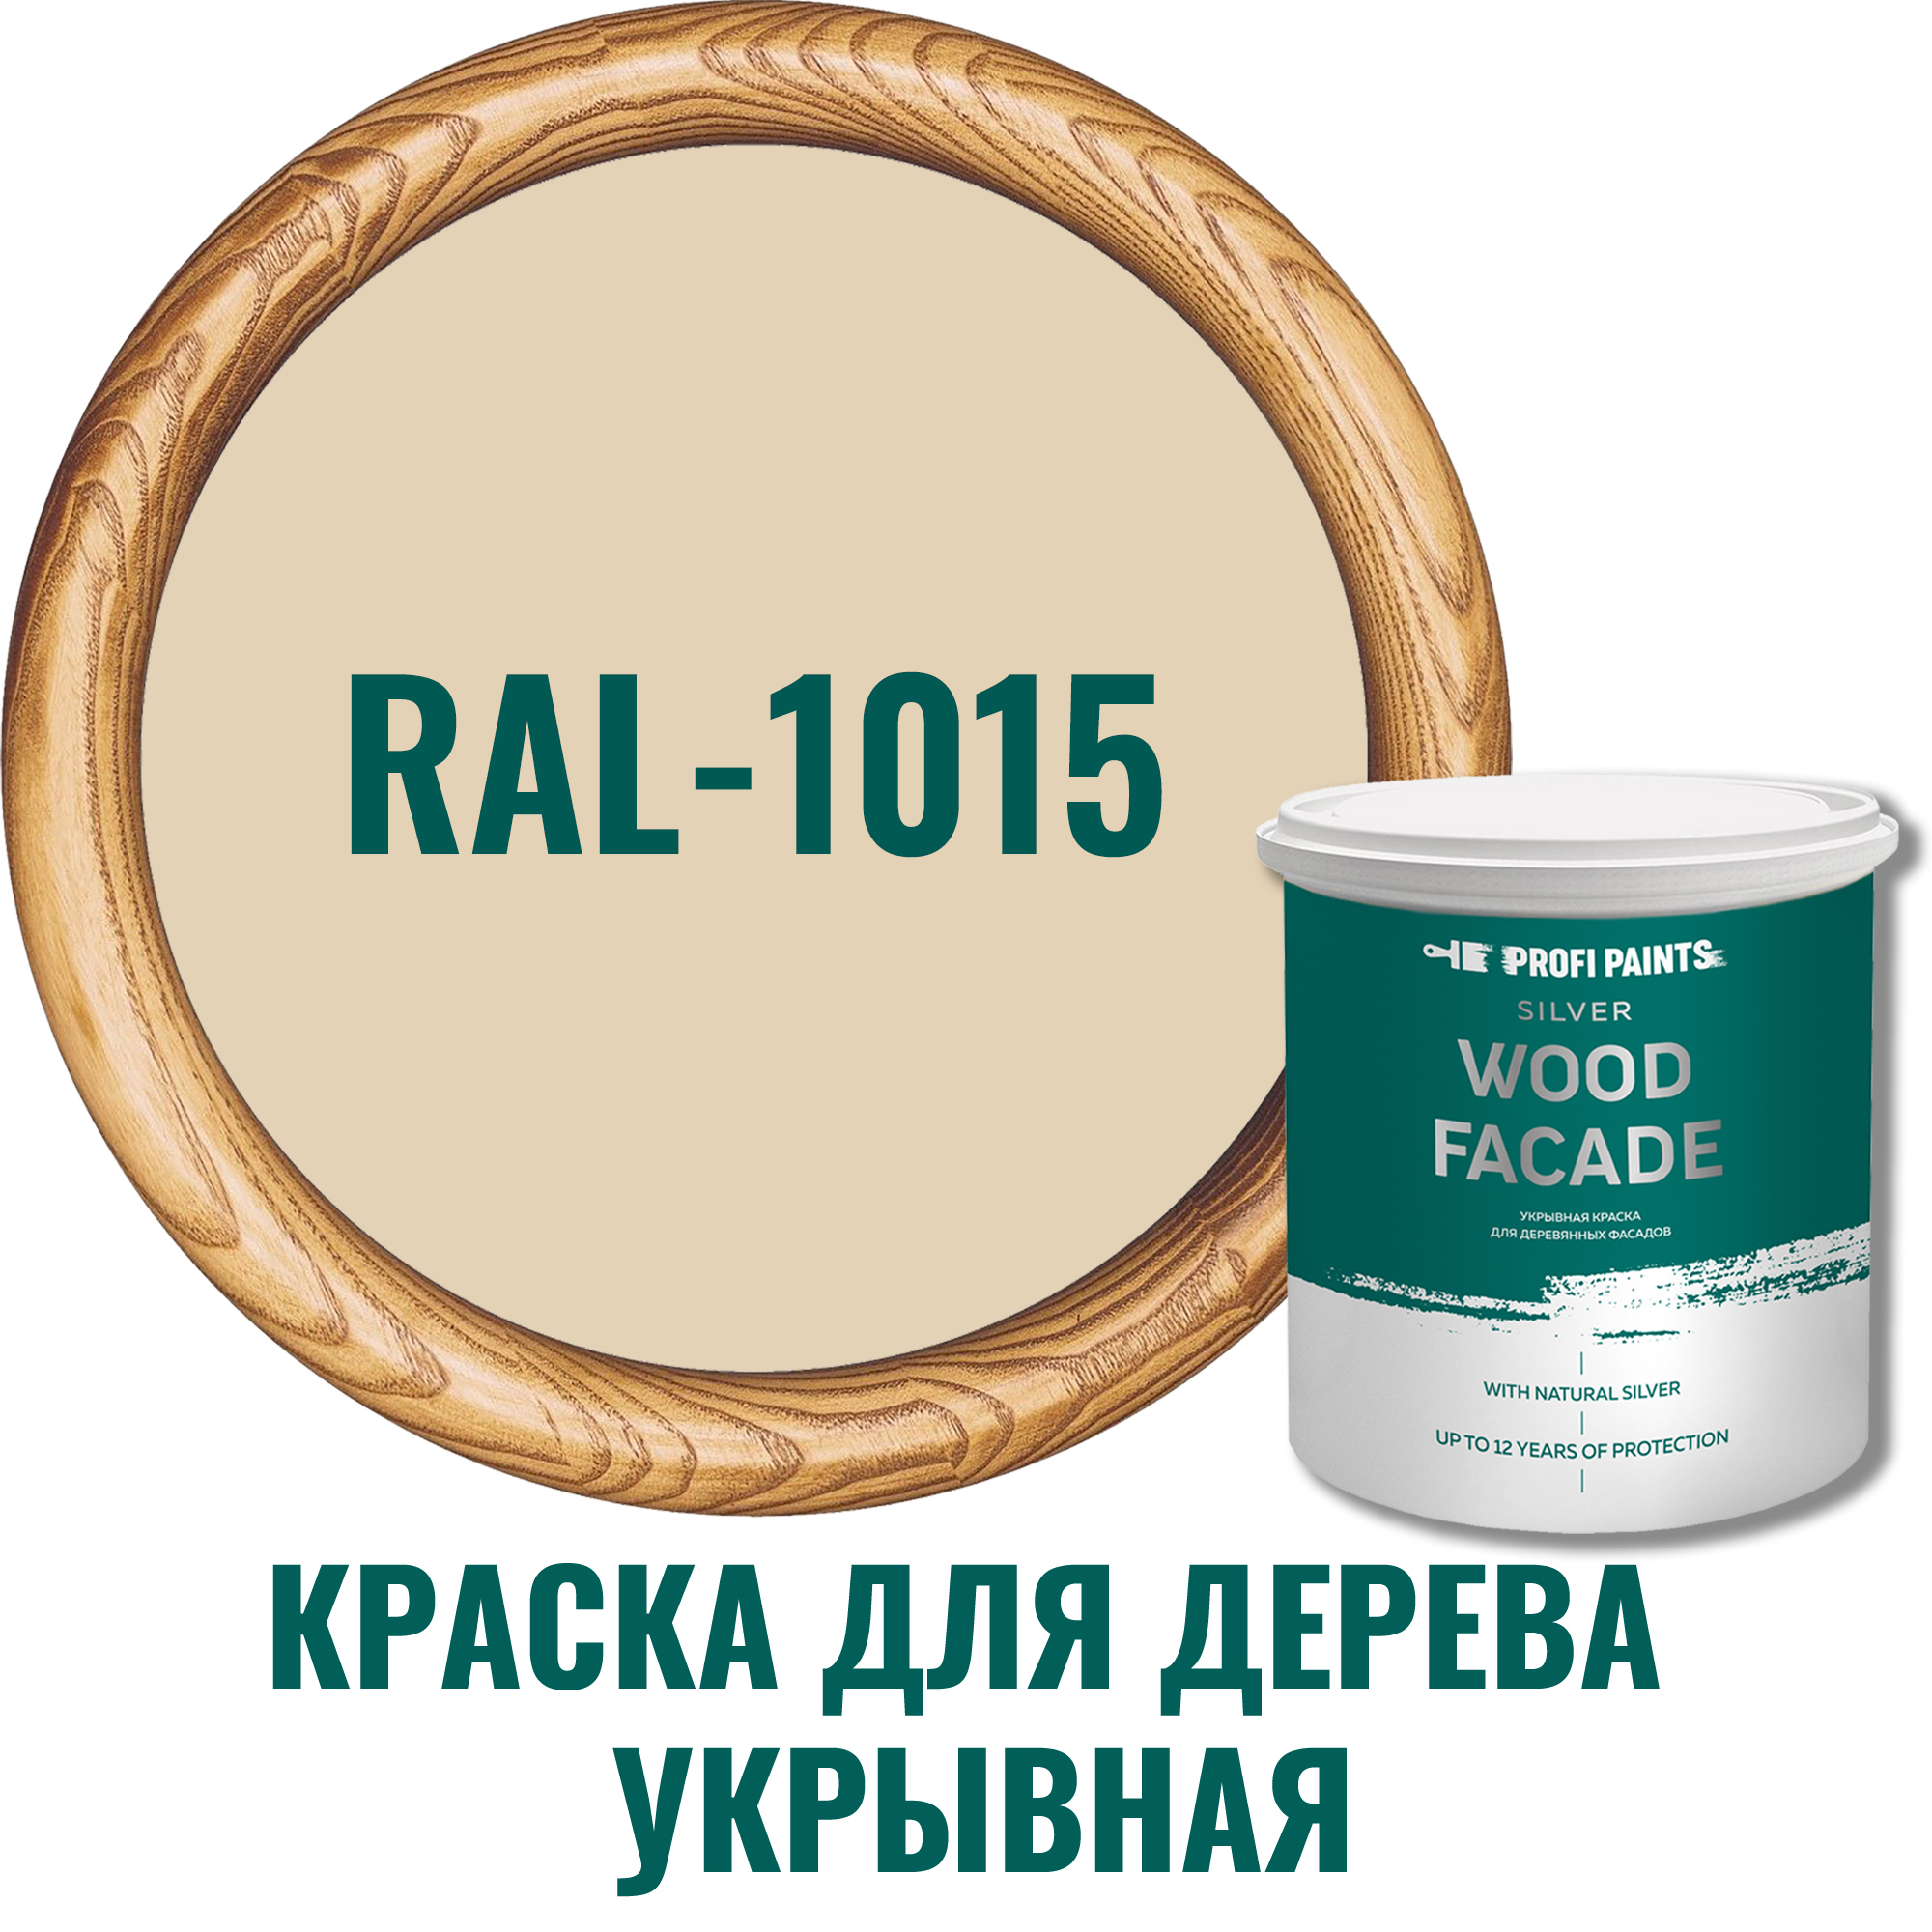 91106592 Краска для дерева 11232_D SILVER WOOD FASADE цвет RAL-1015 слоновая кость 0.9 л STLM-0487590 PROFIPAINTS